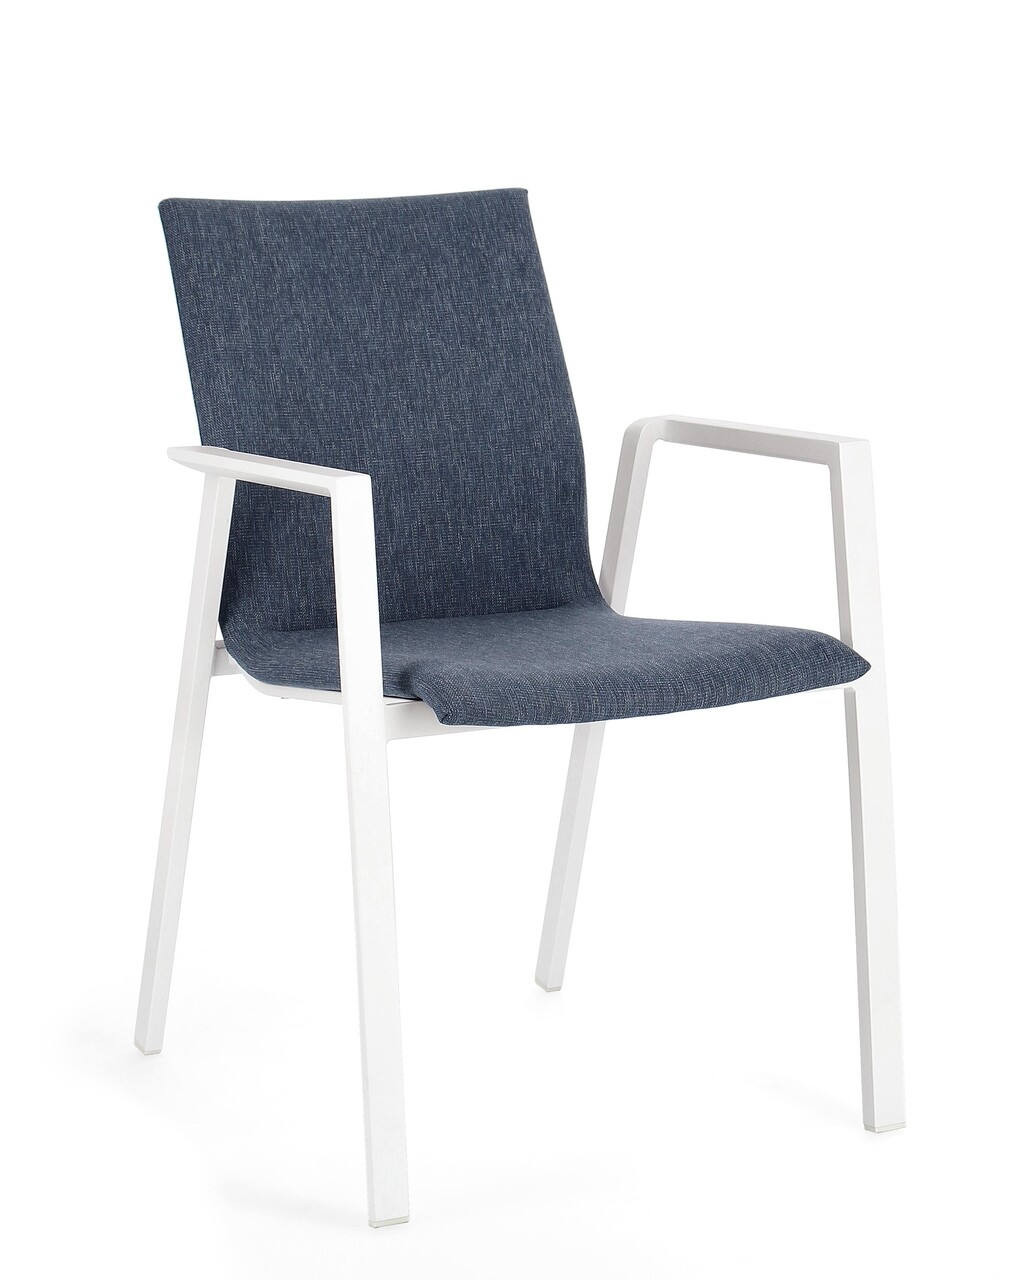 Odeon kerti szék, bizzotto, 55.5 x 60 x 83 cm, alumínium/textilén/ofelin szövet, fehér/kék